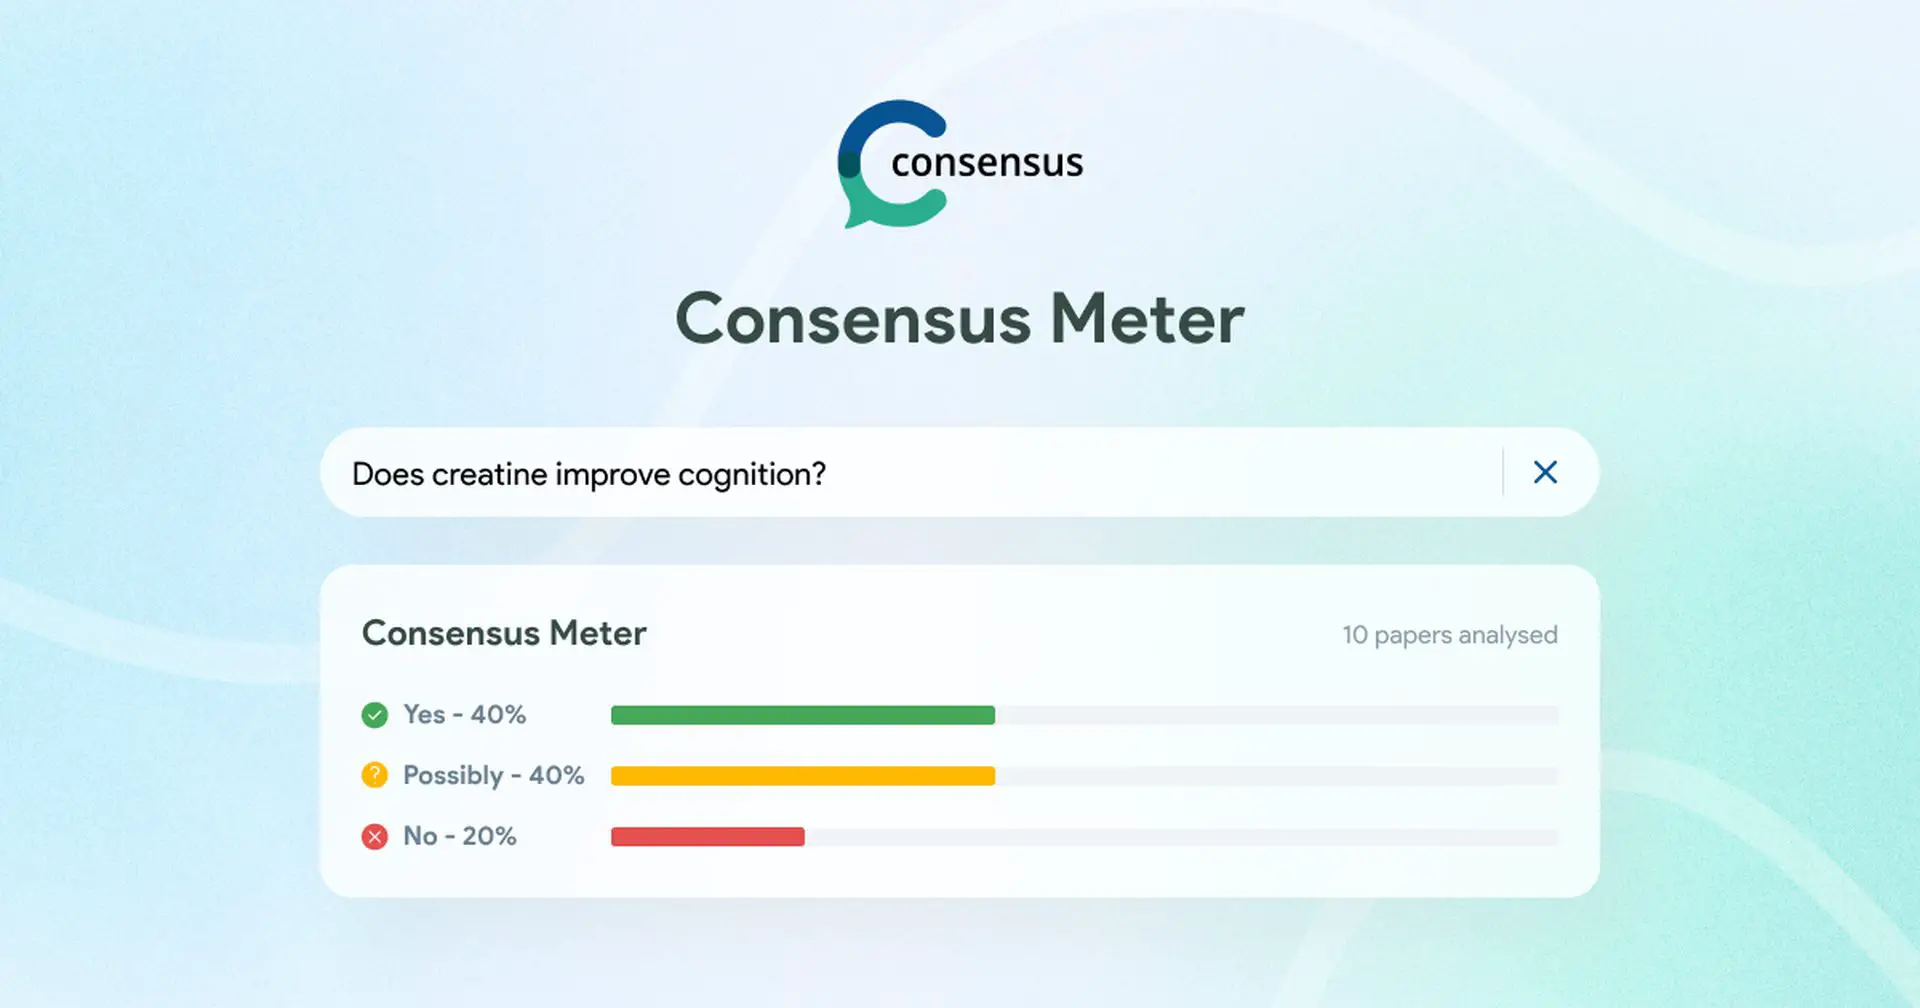 Consensus Meter